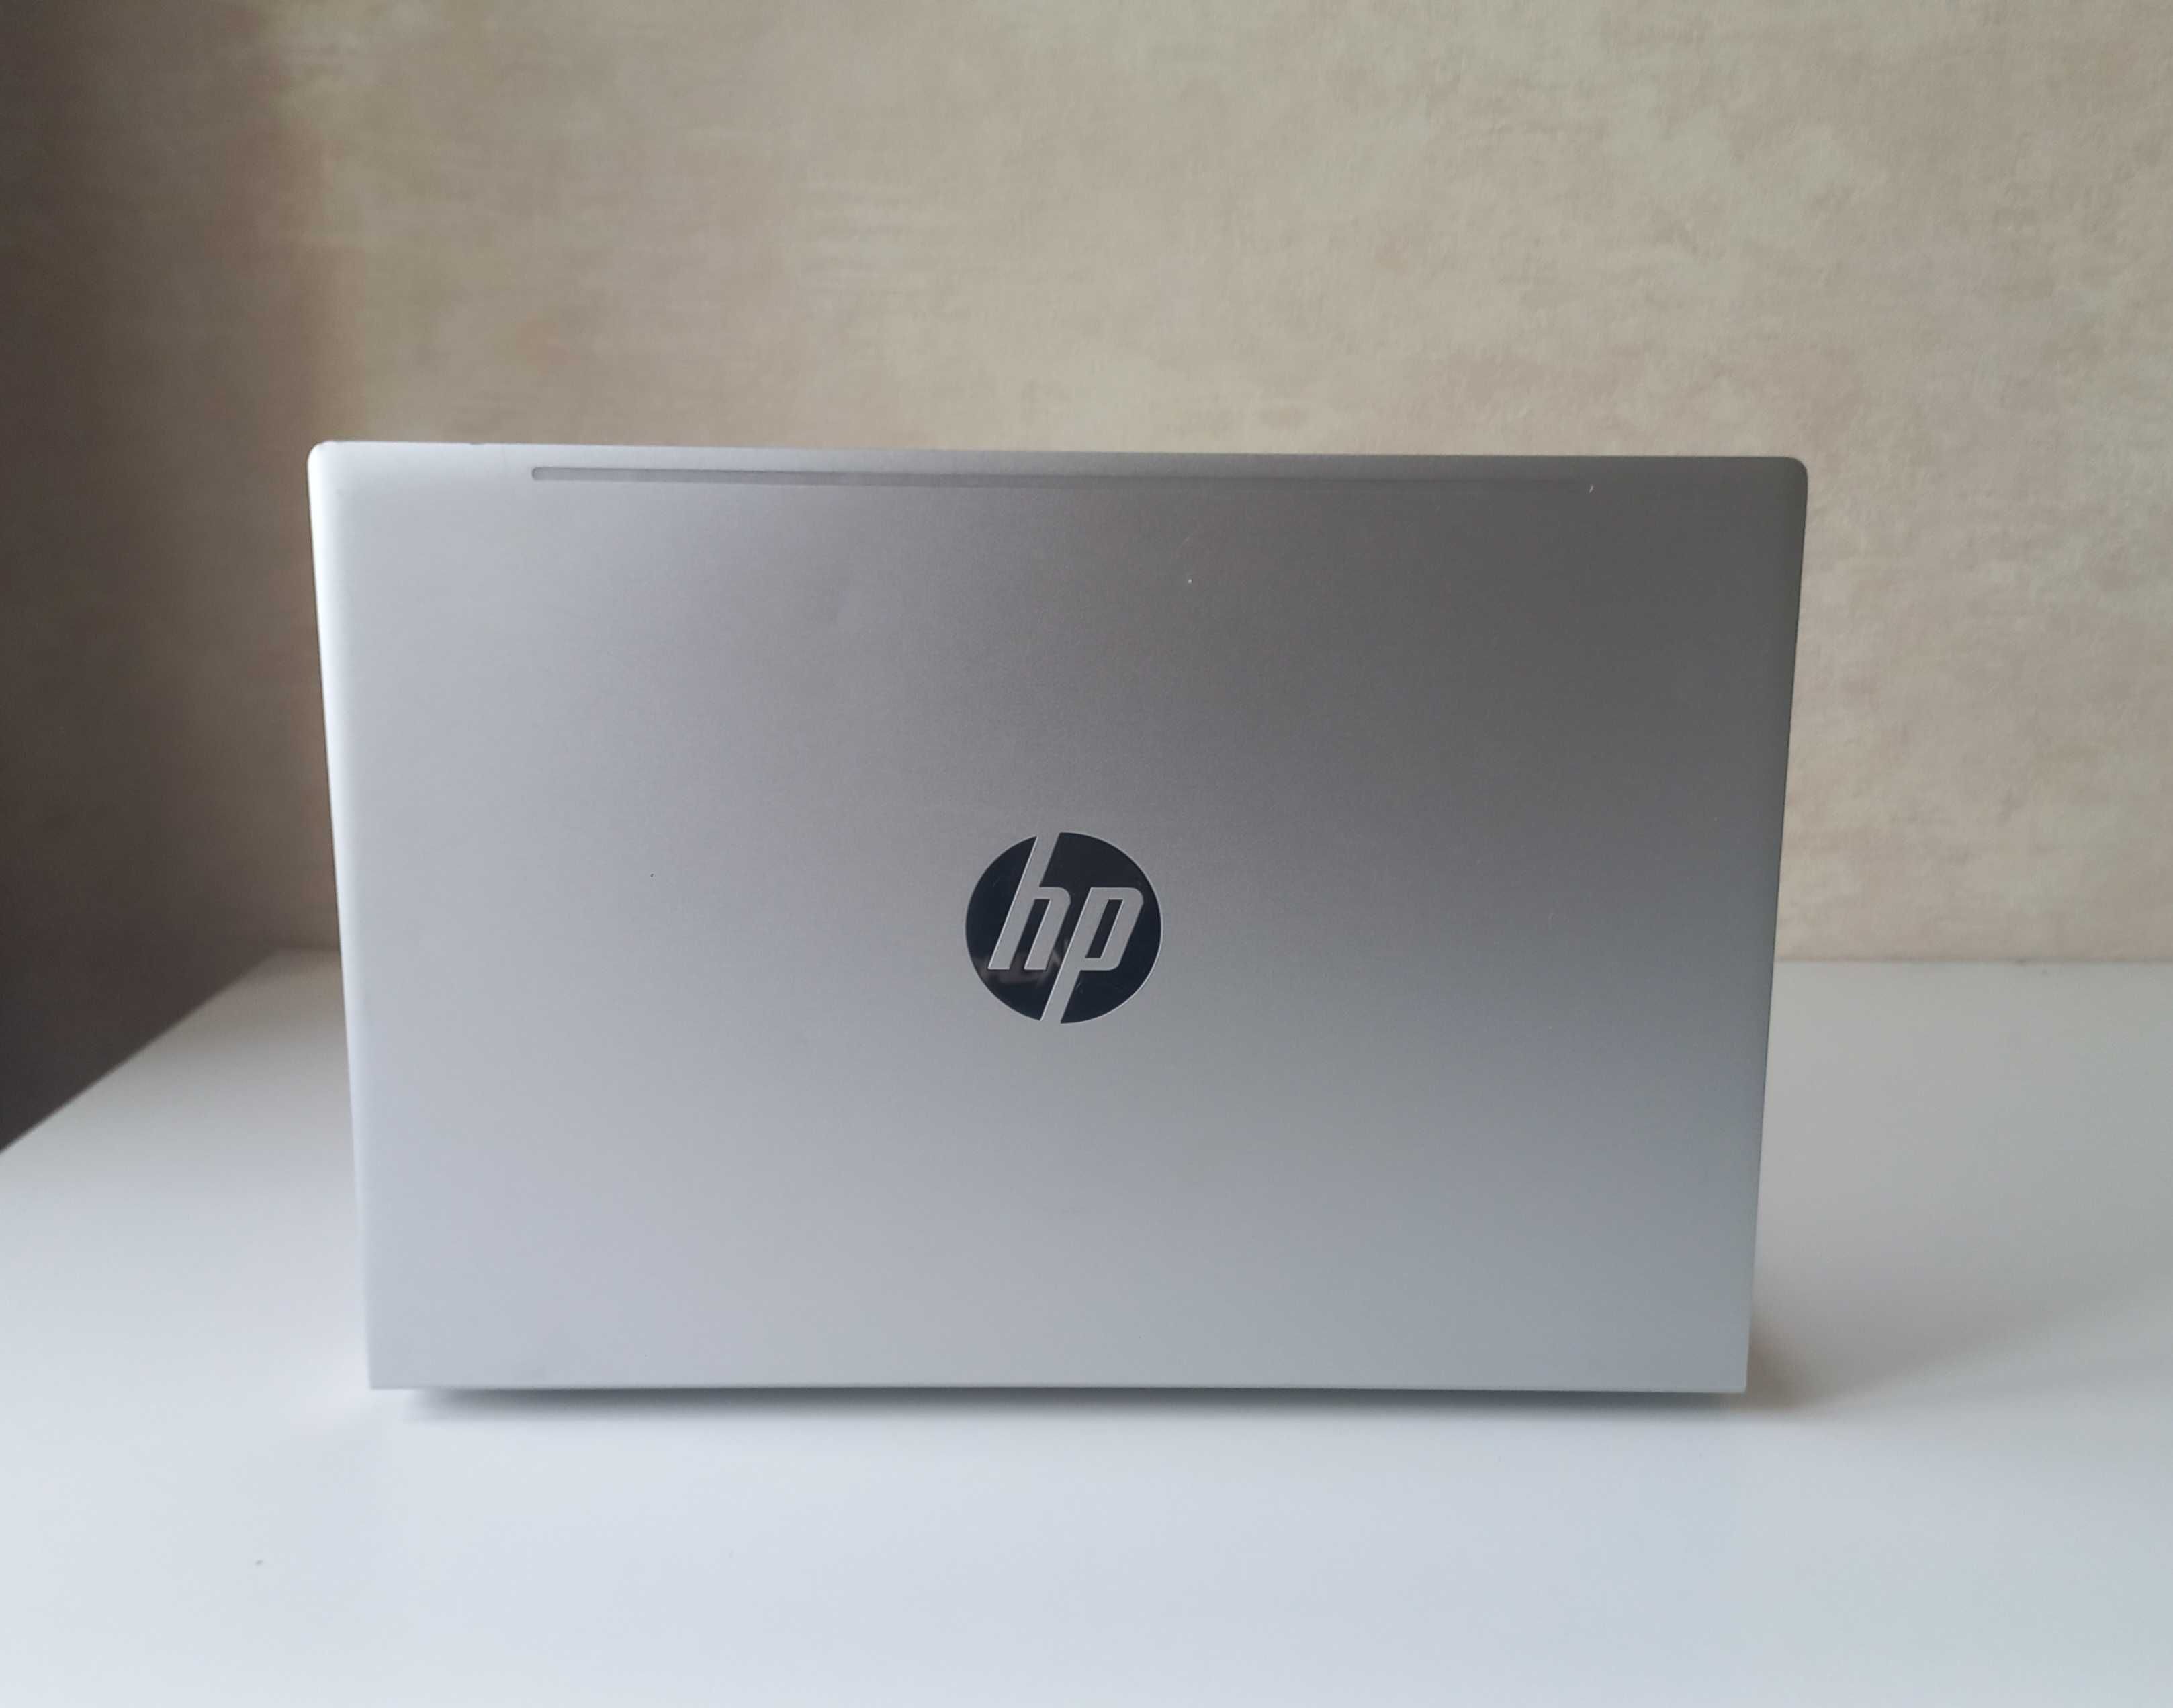 Ноутбук HP ProBook 430 G8, Intel® Core™ i5-1135G7, 8 ГБ DDR4, 256 ГБ